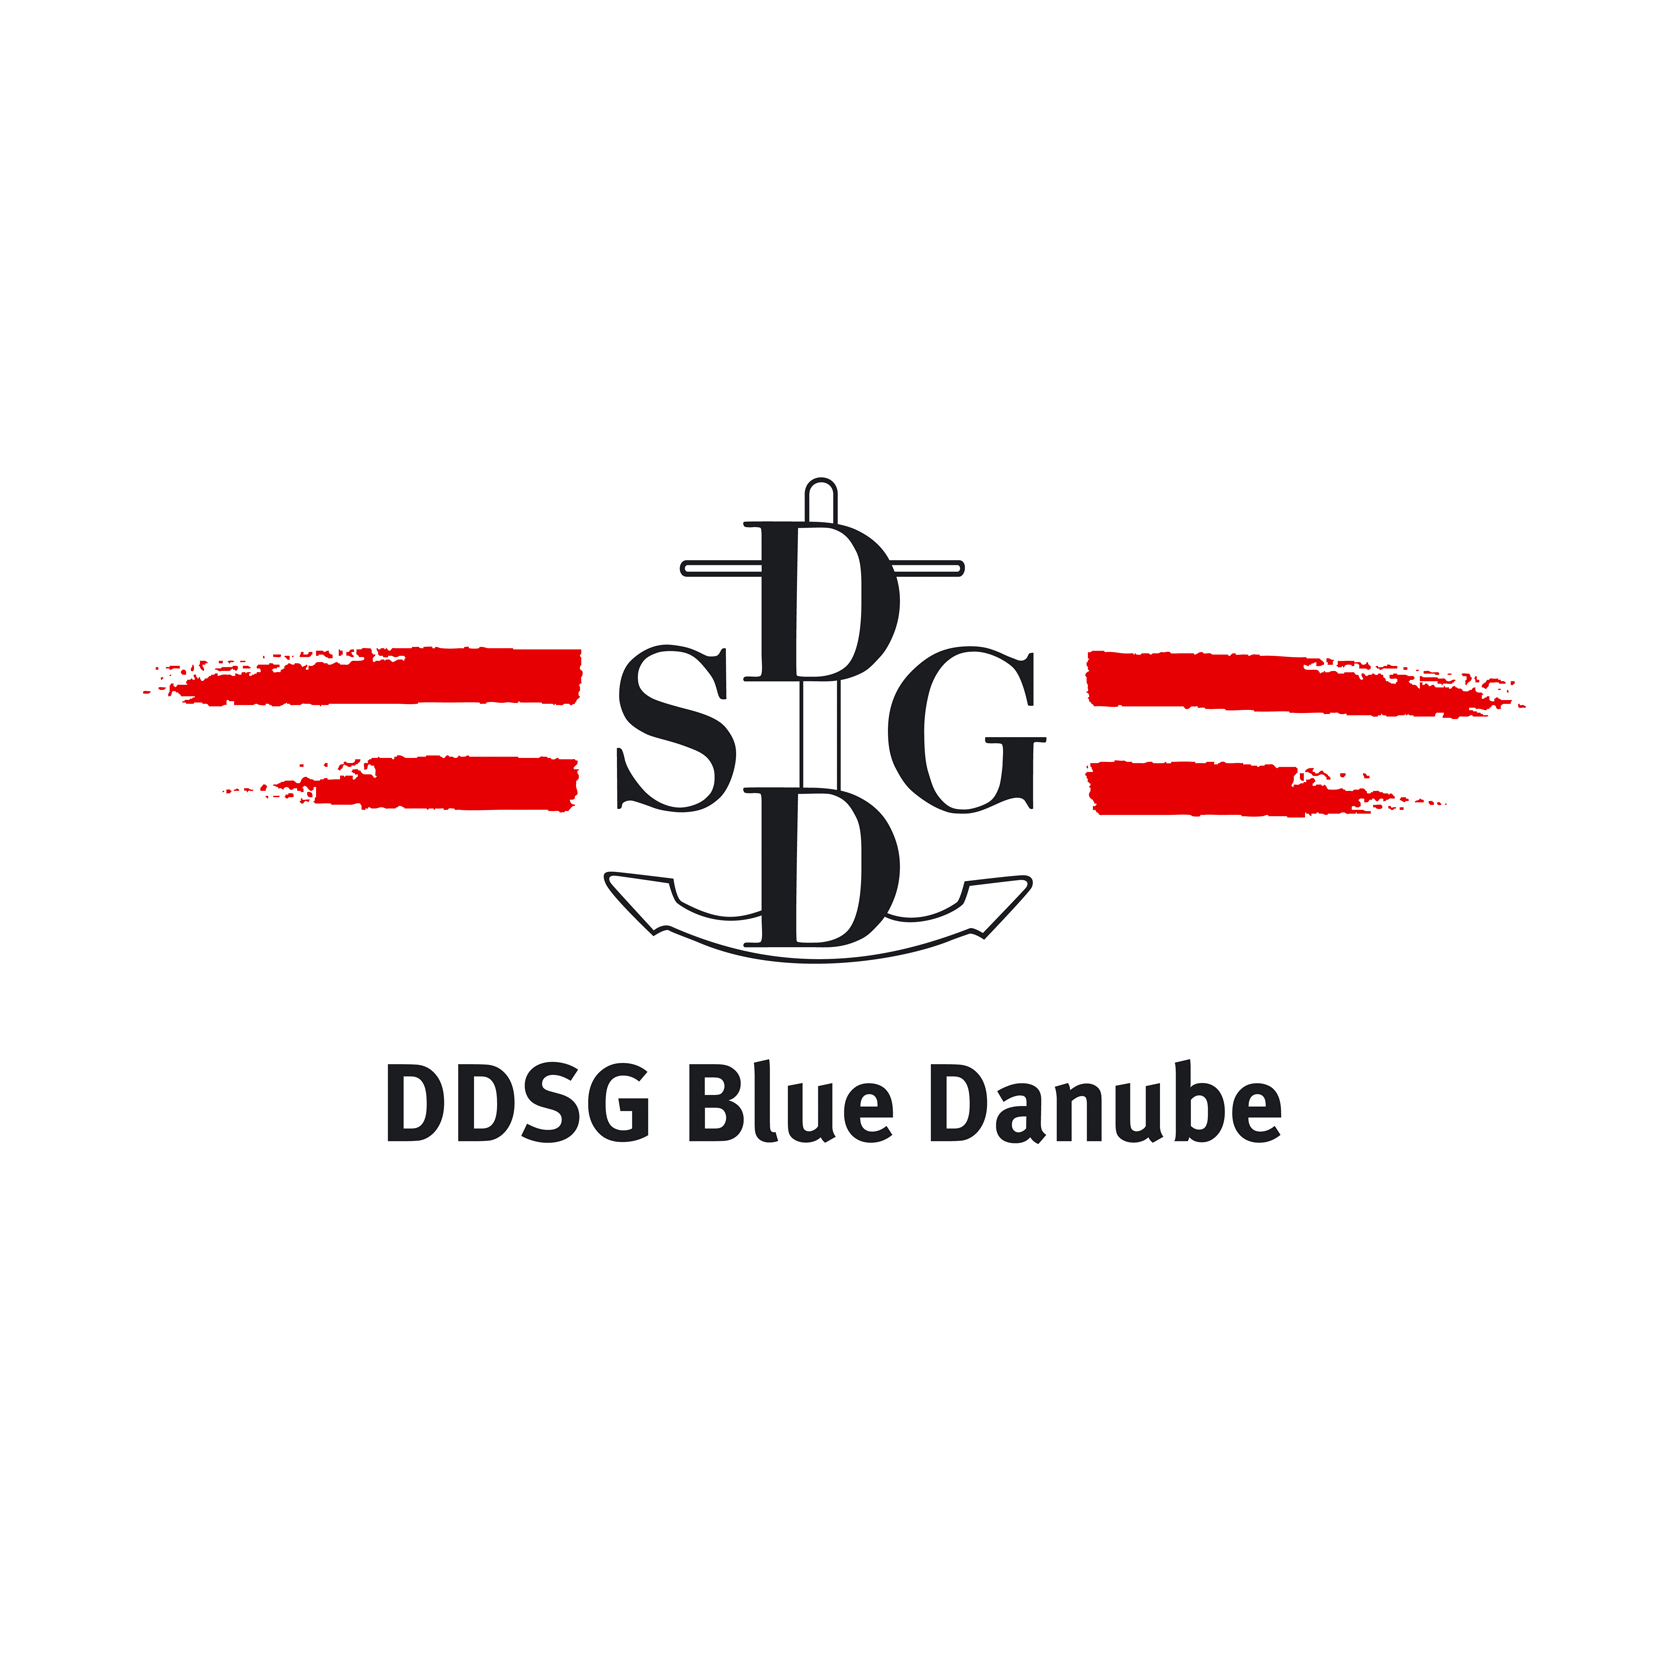 Sponsor_DDSG Blue Danube_logo